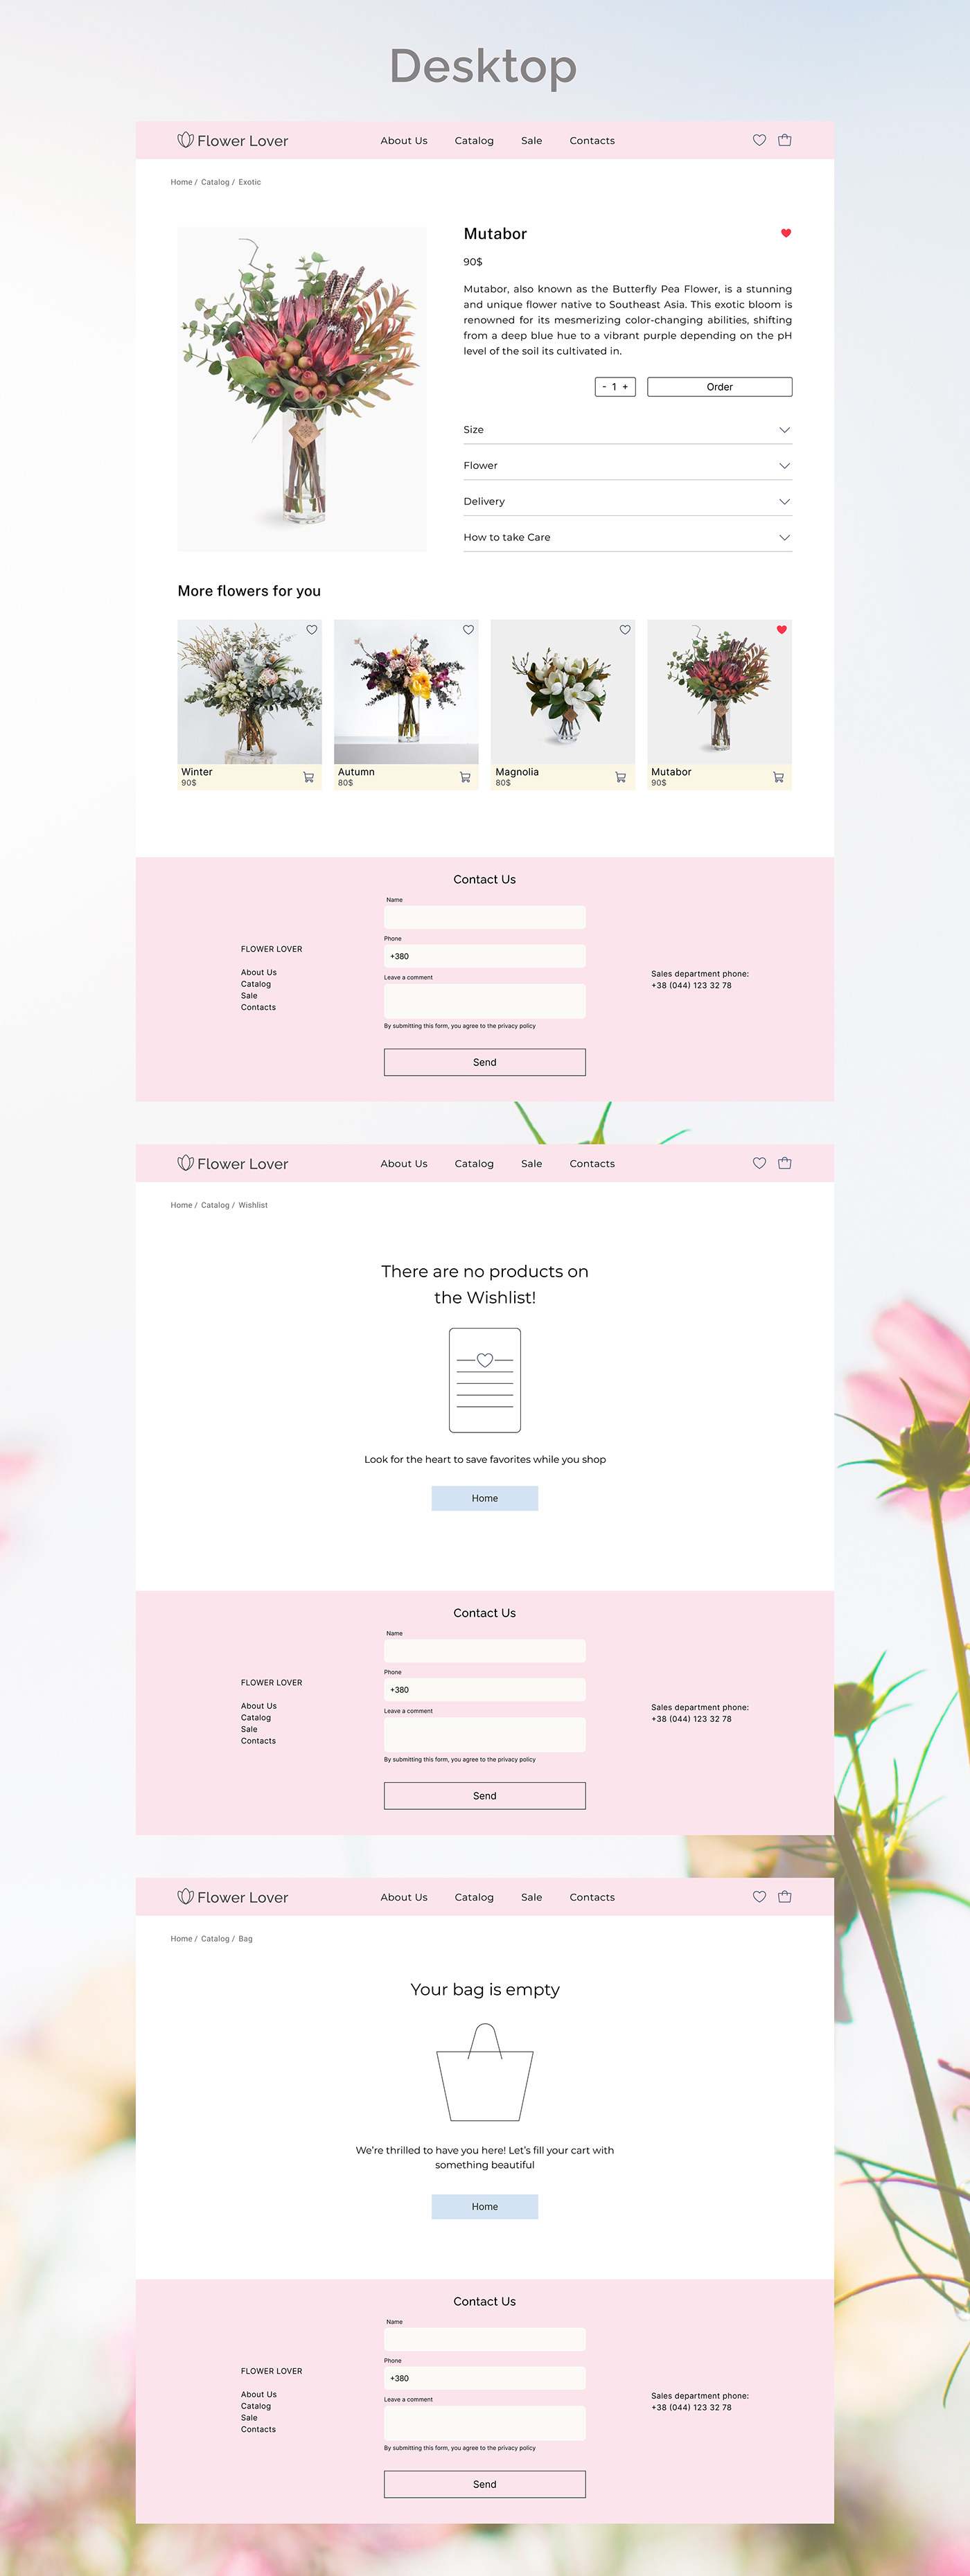 design Web Design  UI/UX landing page Website Design Figma Flower Shop ui design UX design Case Study